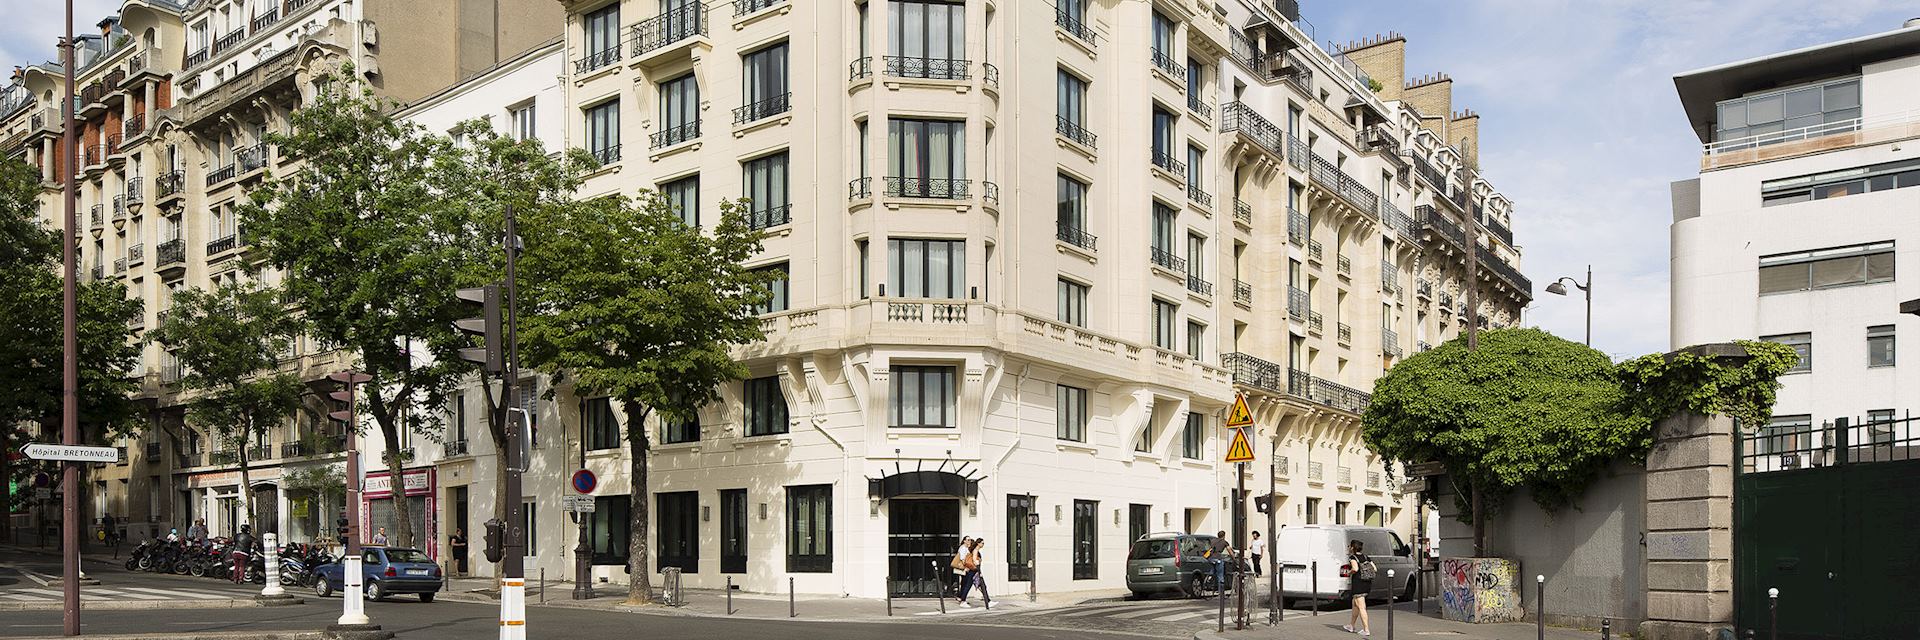 Le Terrass Hotel, Paris